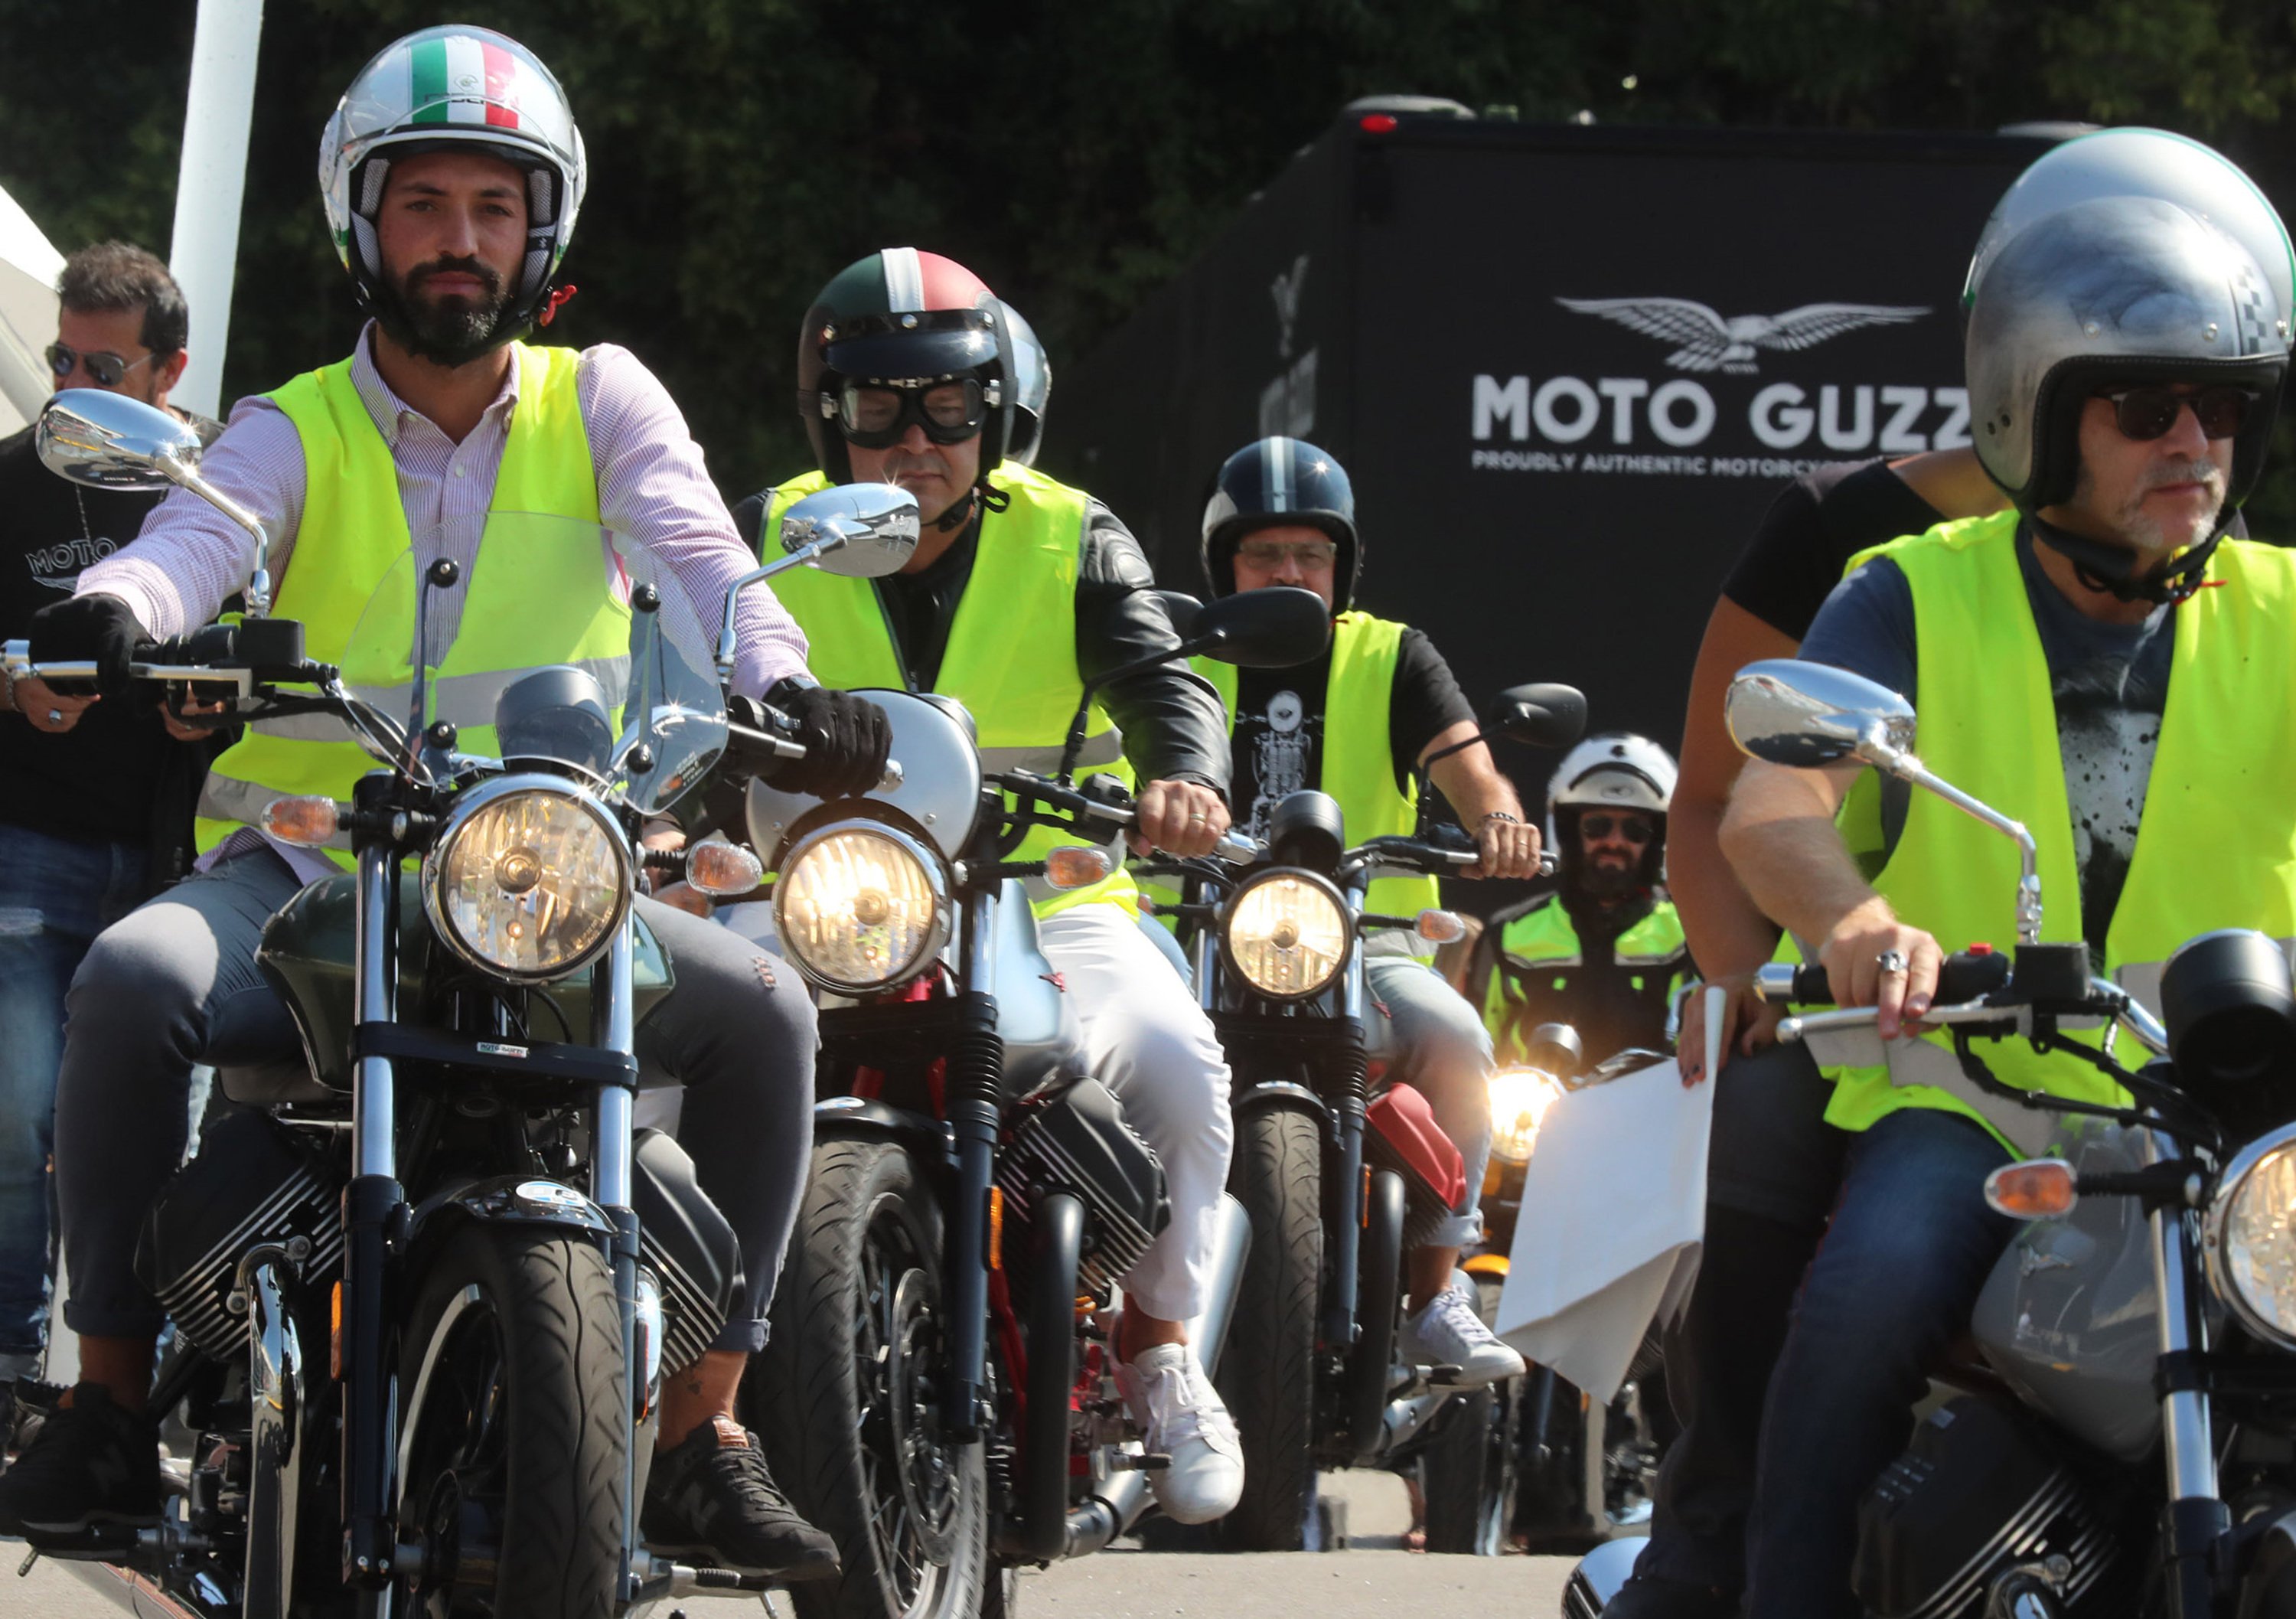 Moto Guzzi Open House 2019, il programma completo